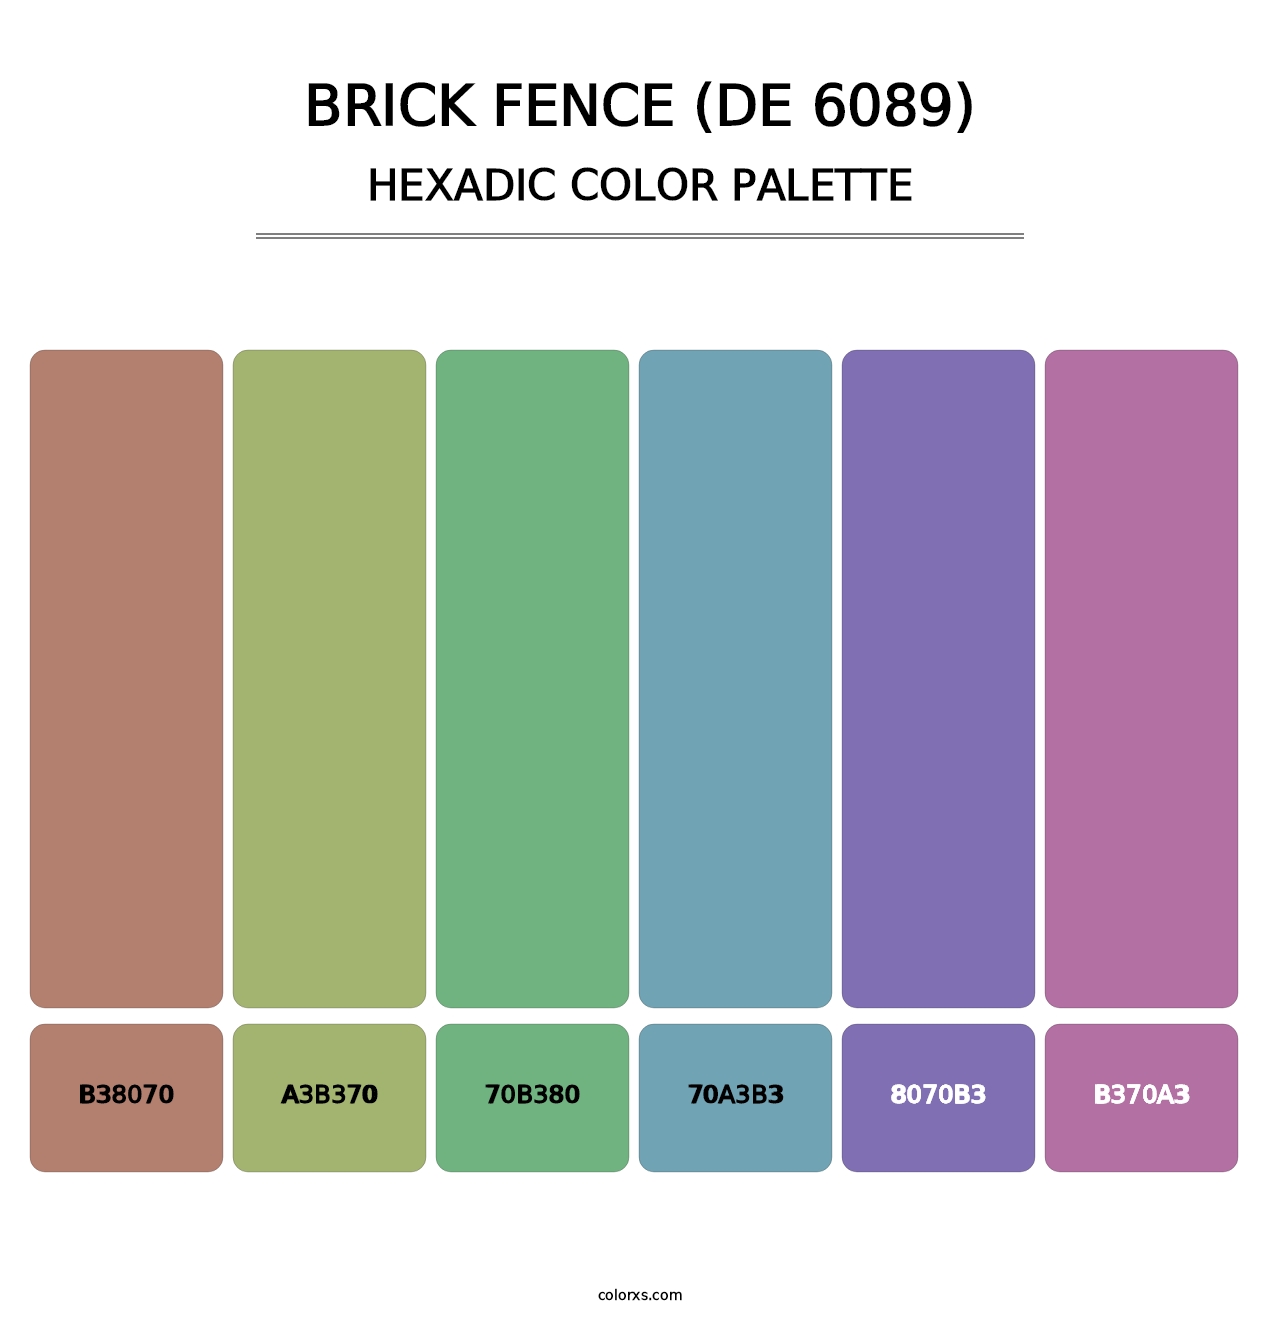 Brick Fence (DE 6089) - Hexadic Color Palette